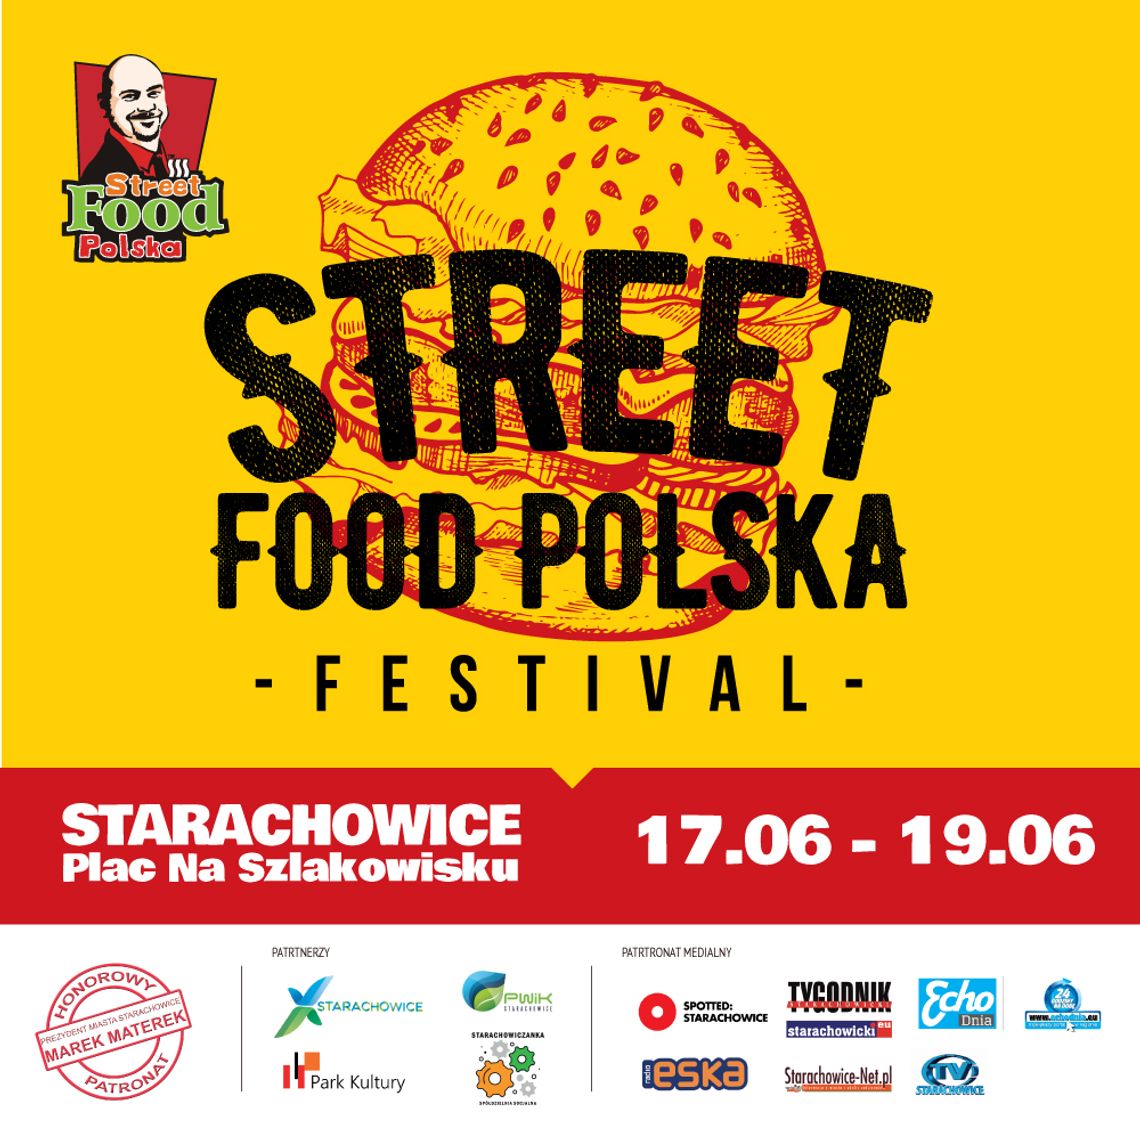 Wygraj voucher na Street Food Festival w Starachowicach!